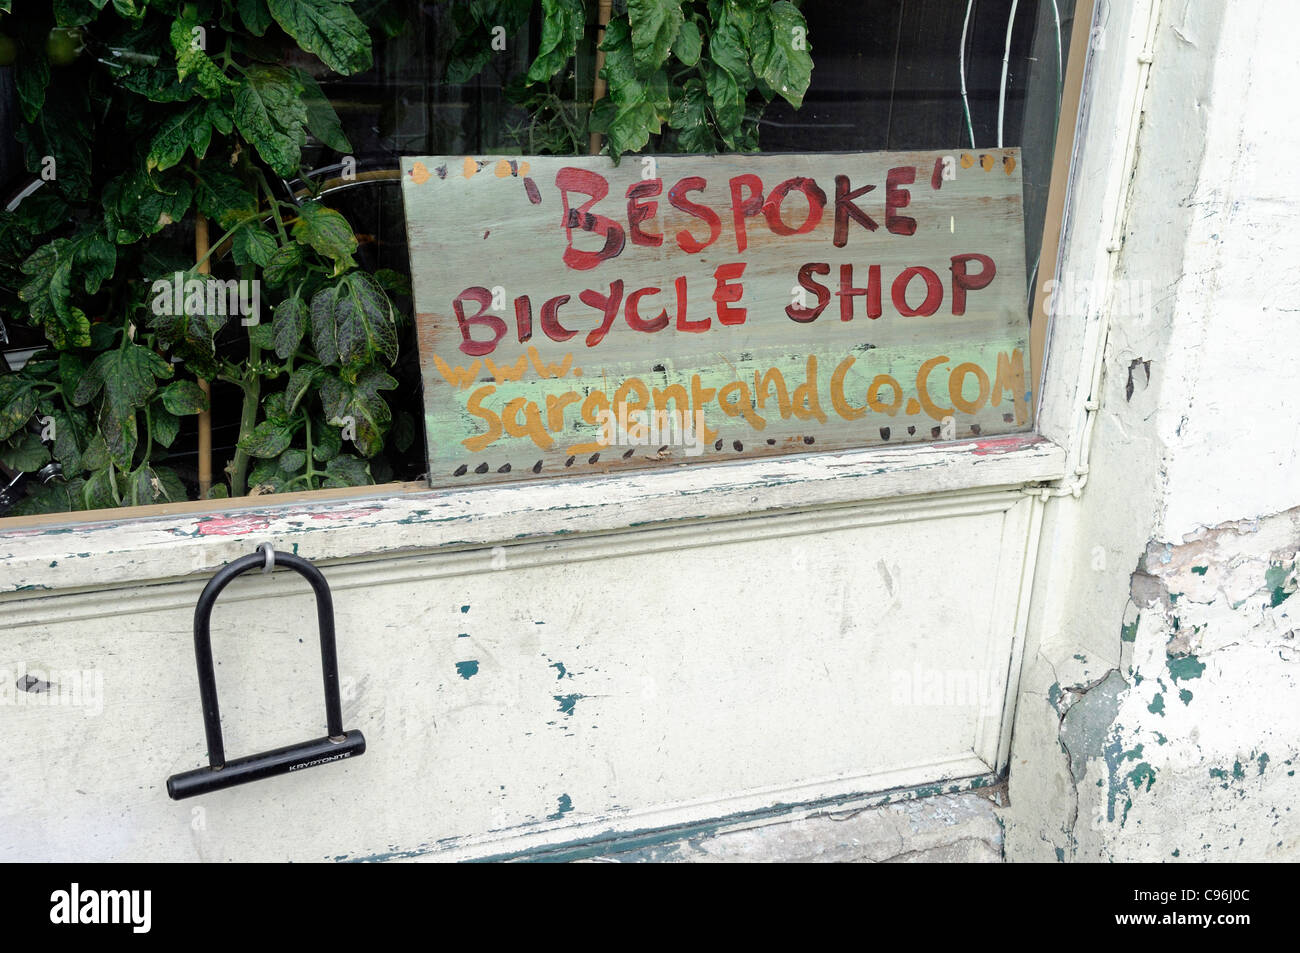 Panneau disant 'Bespoke' Bicycle Shop au coin de vitrine avec u lock pendant de mur à l'extérieur, Sargent et co, Hackney Banque D'Images